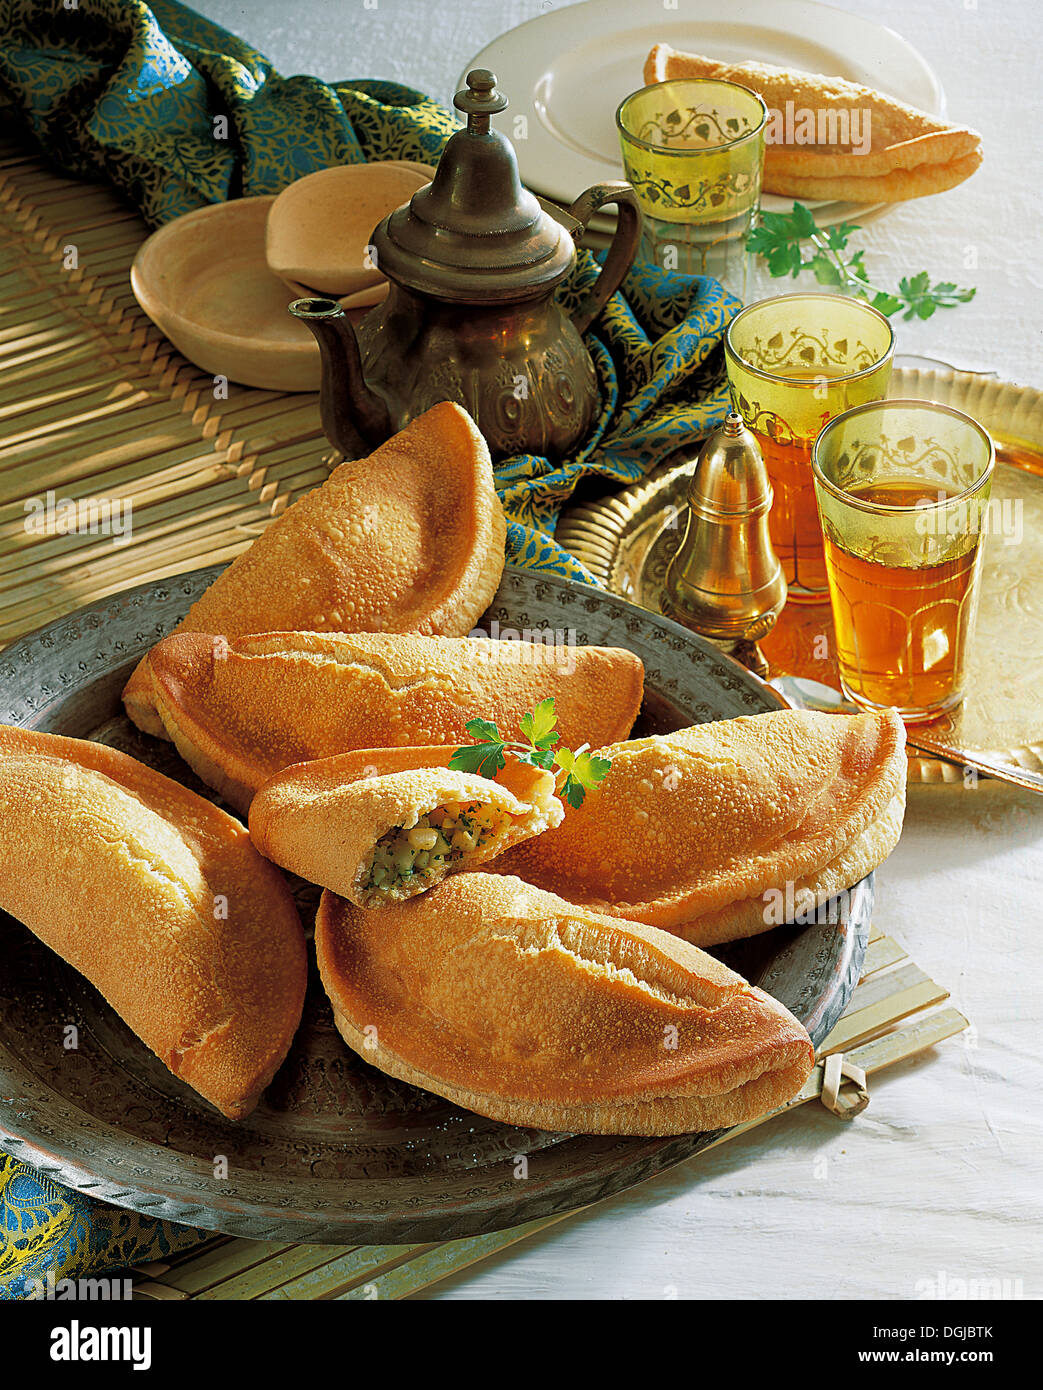 Potato pasties, Egypt. Stock Photo